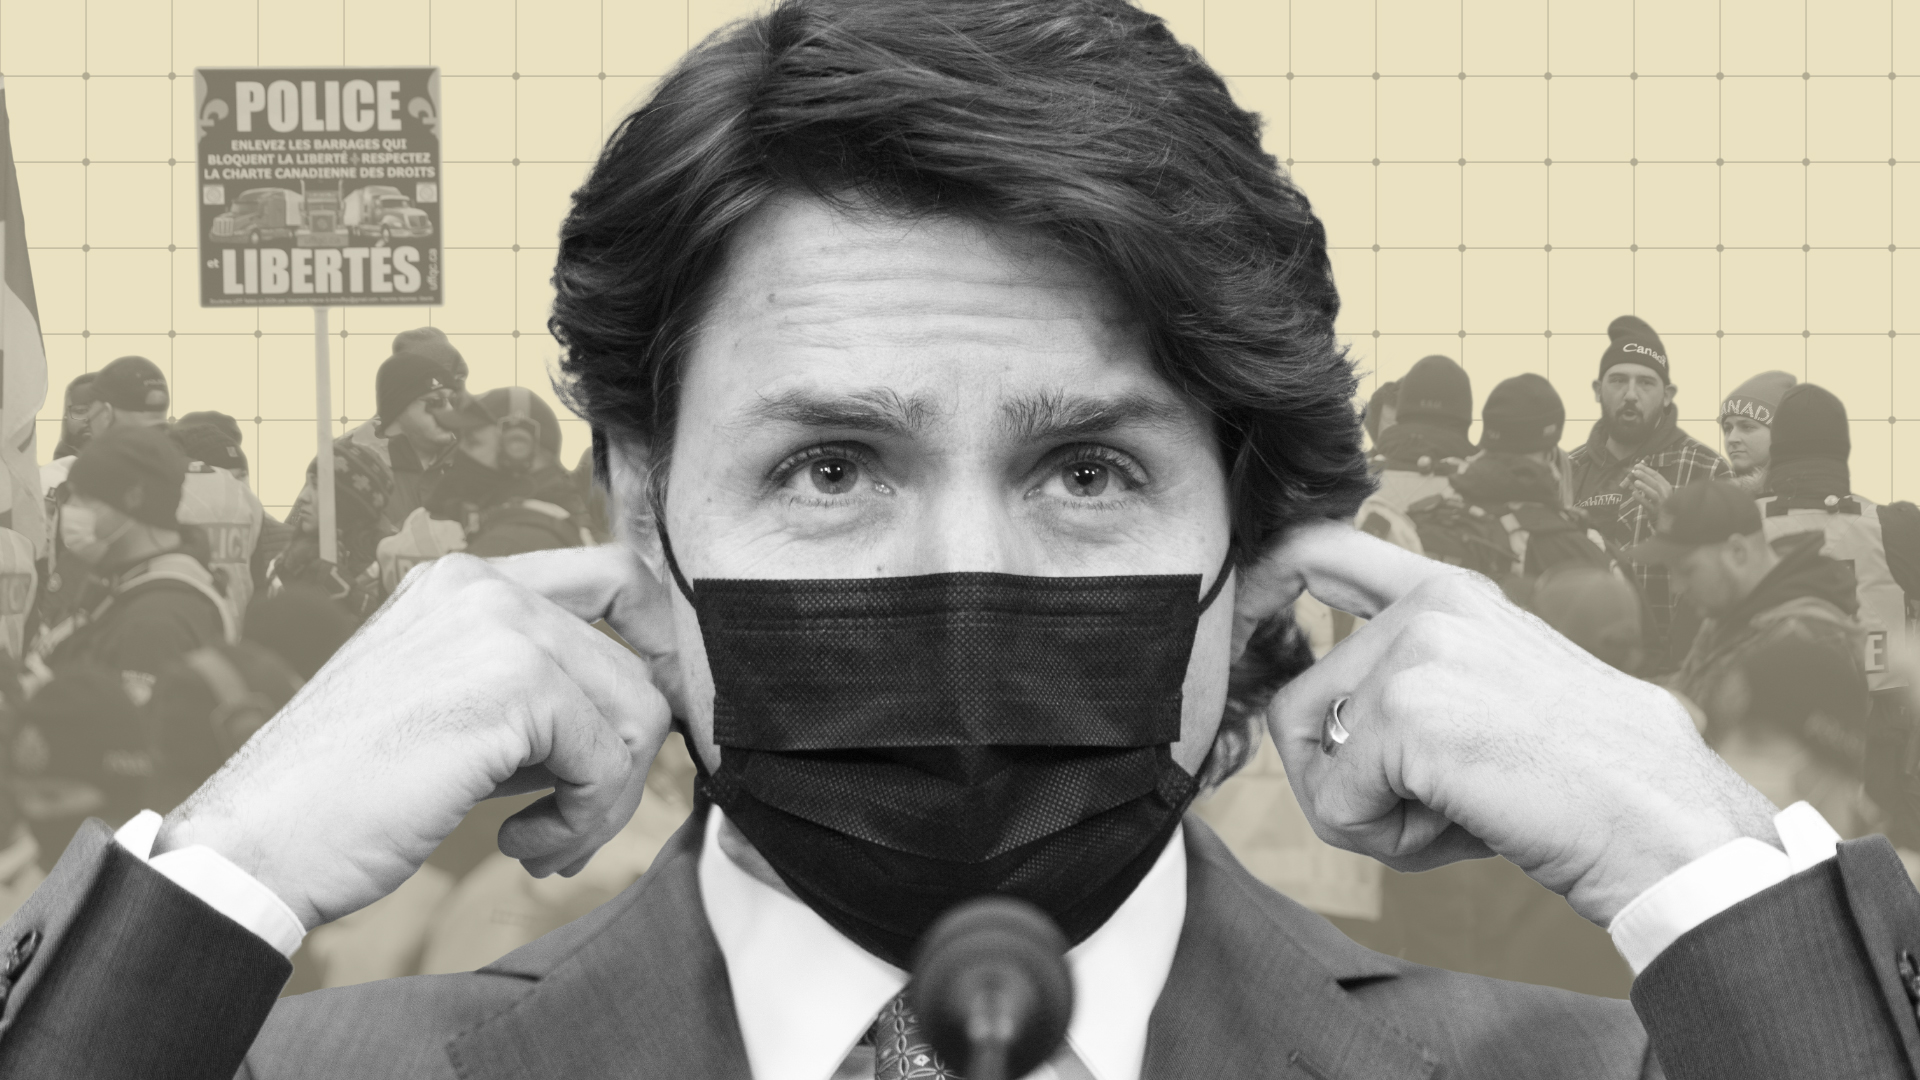 El primer ministro de Canadá, Justin Trudeau